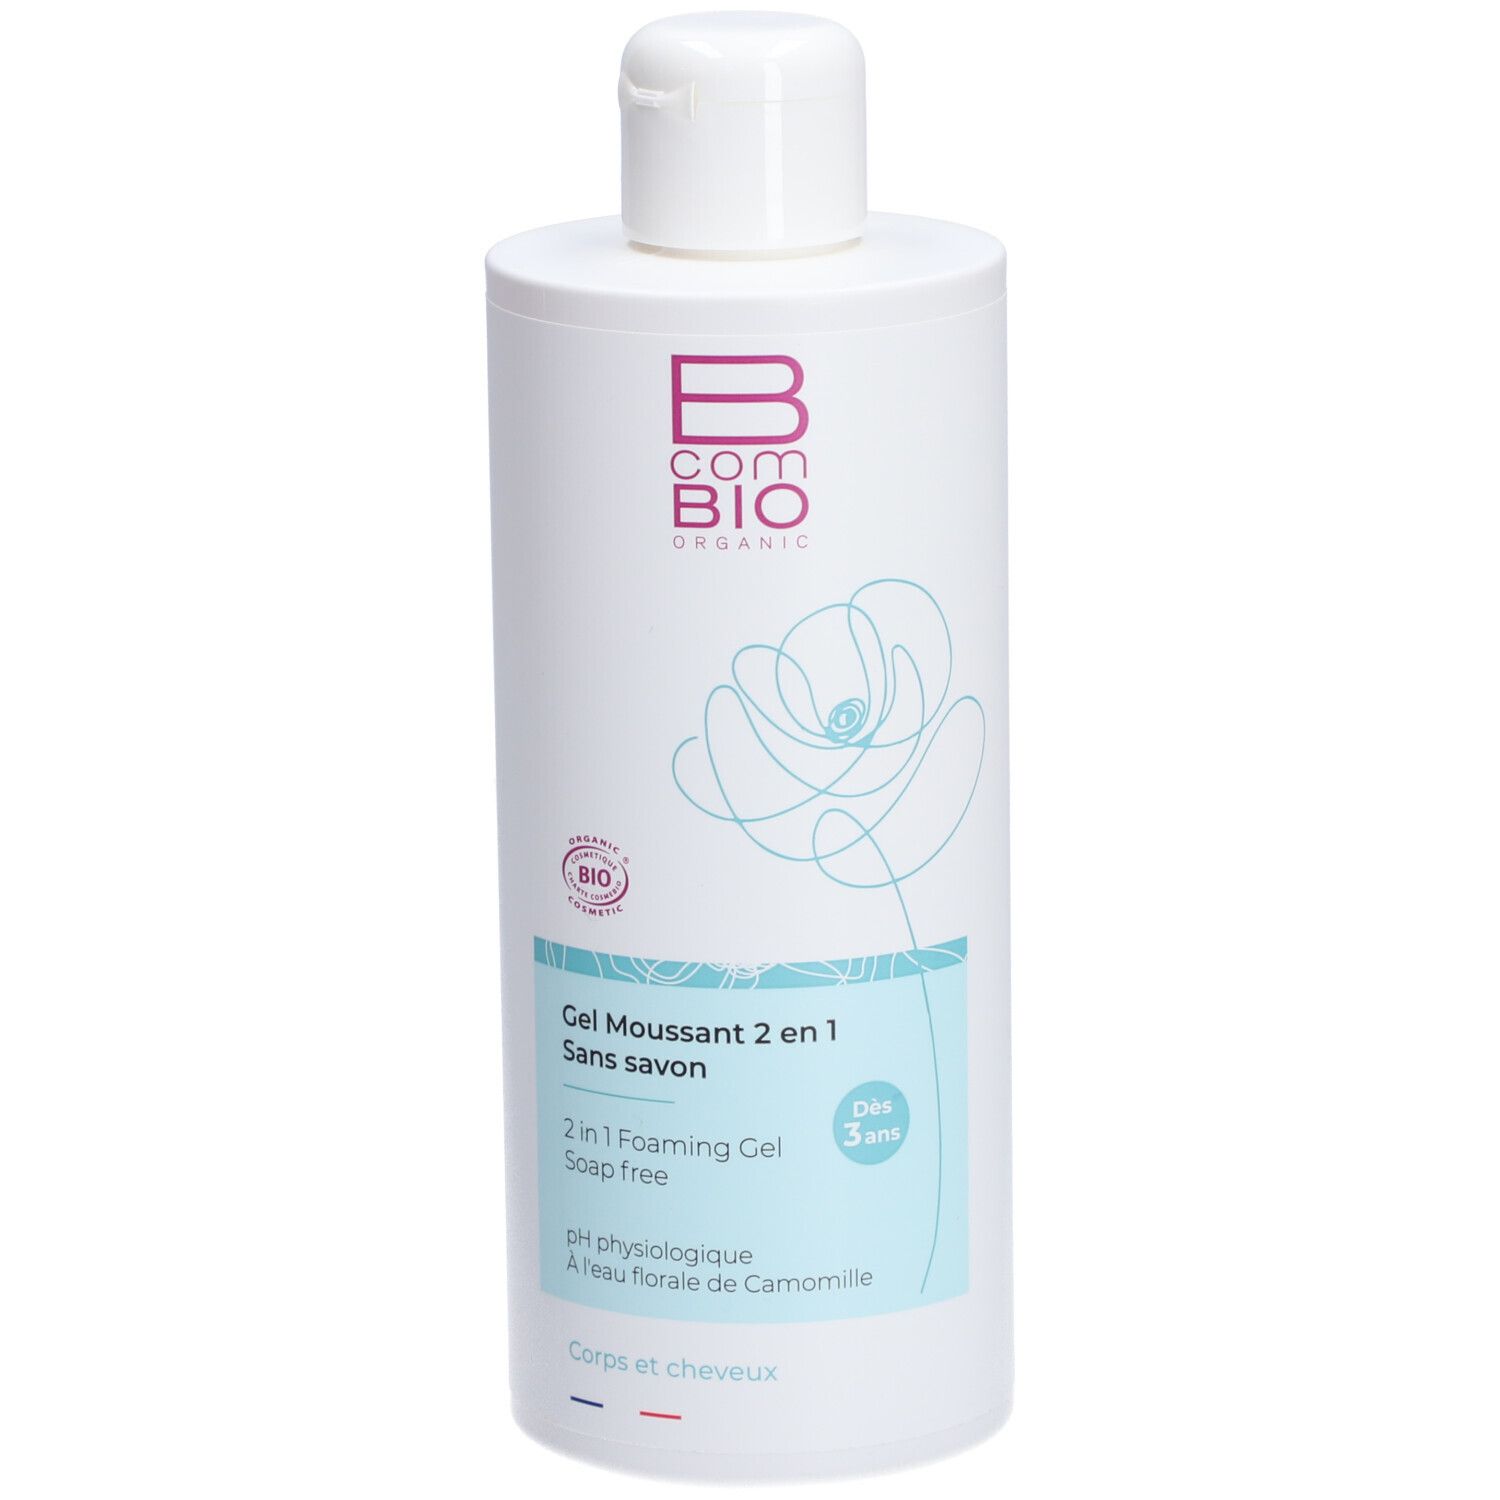 B COM BIO Organic Gel moussant 2 en 1 sans savon